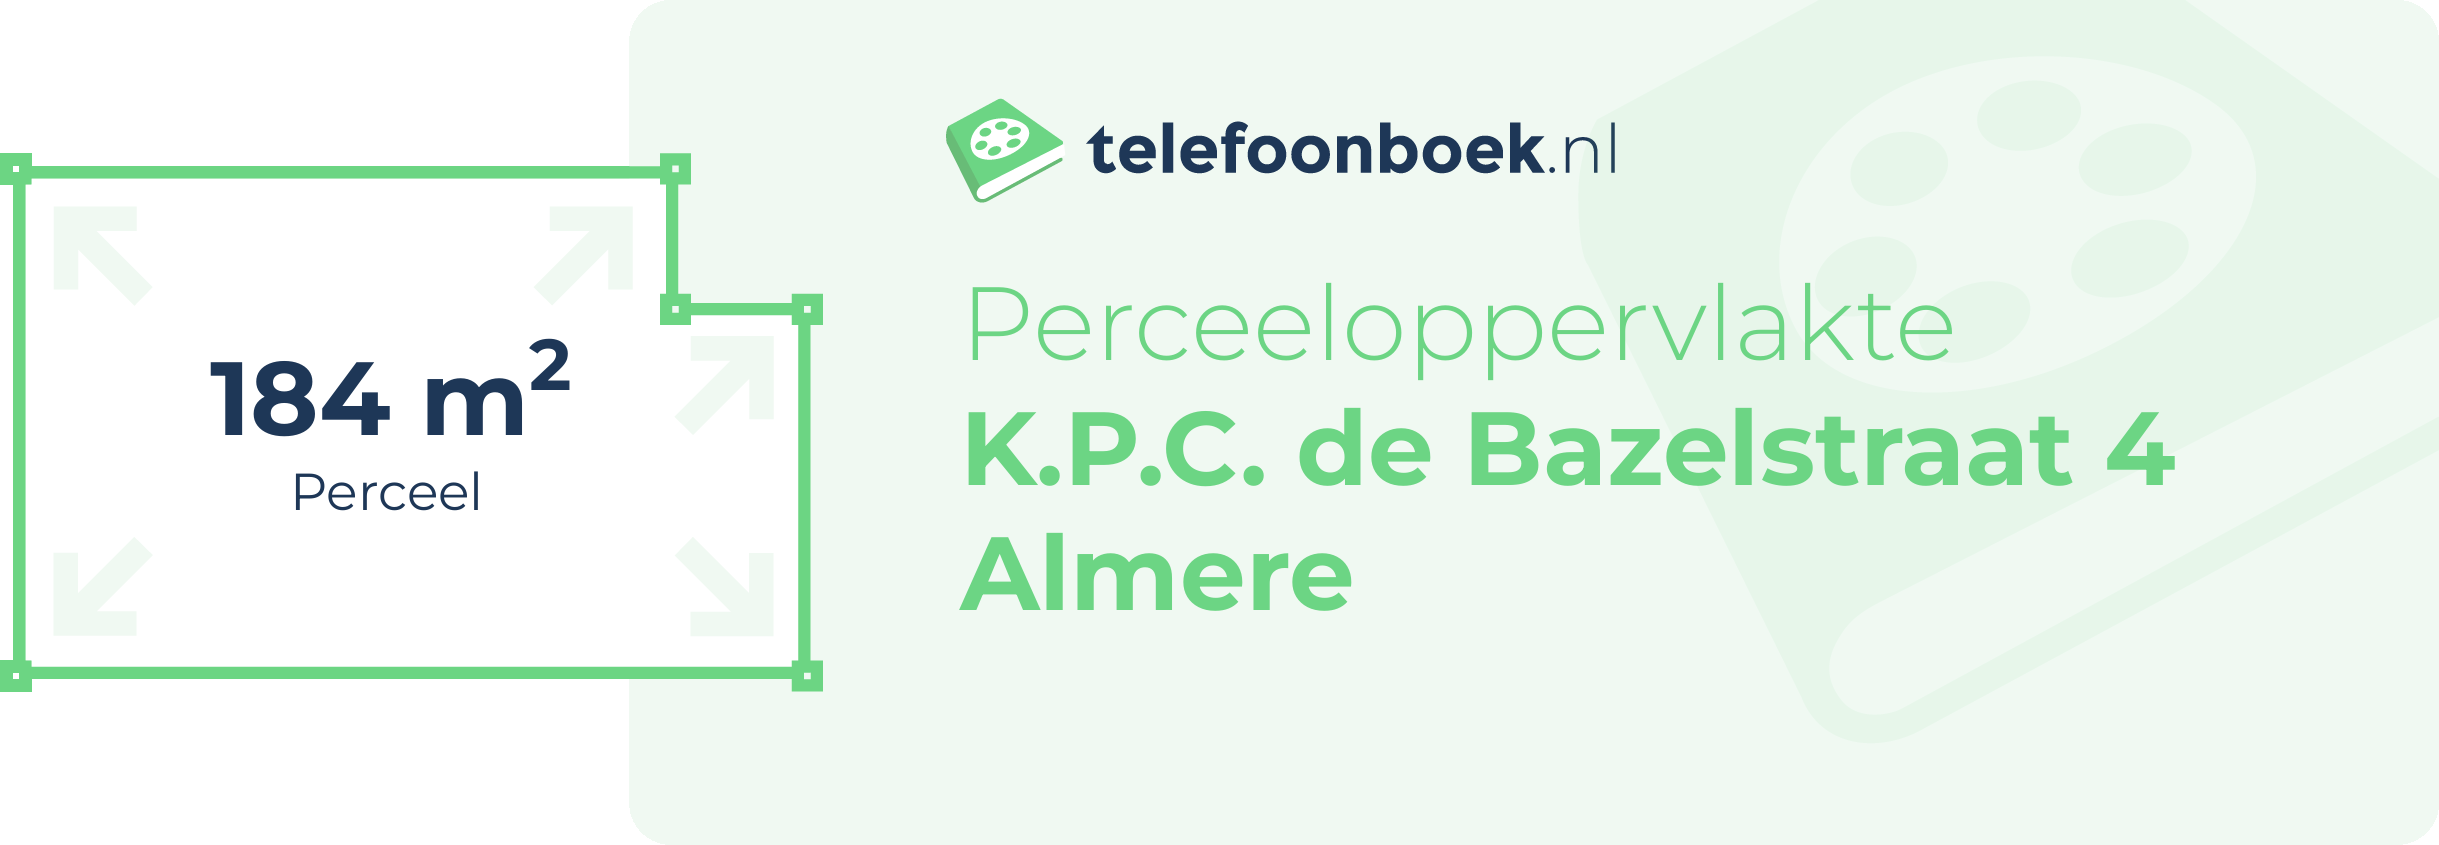 Perceeloppervlakte K.P.C. De Bazelstraat 4 Almere